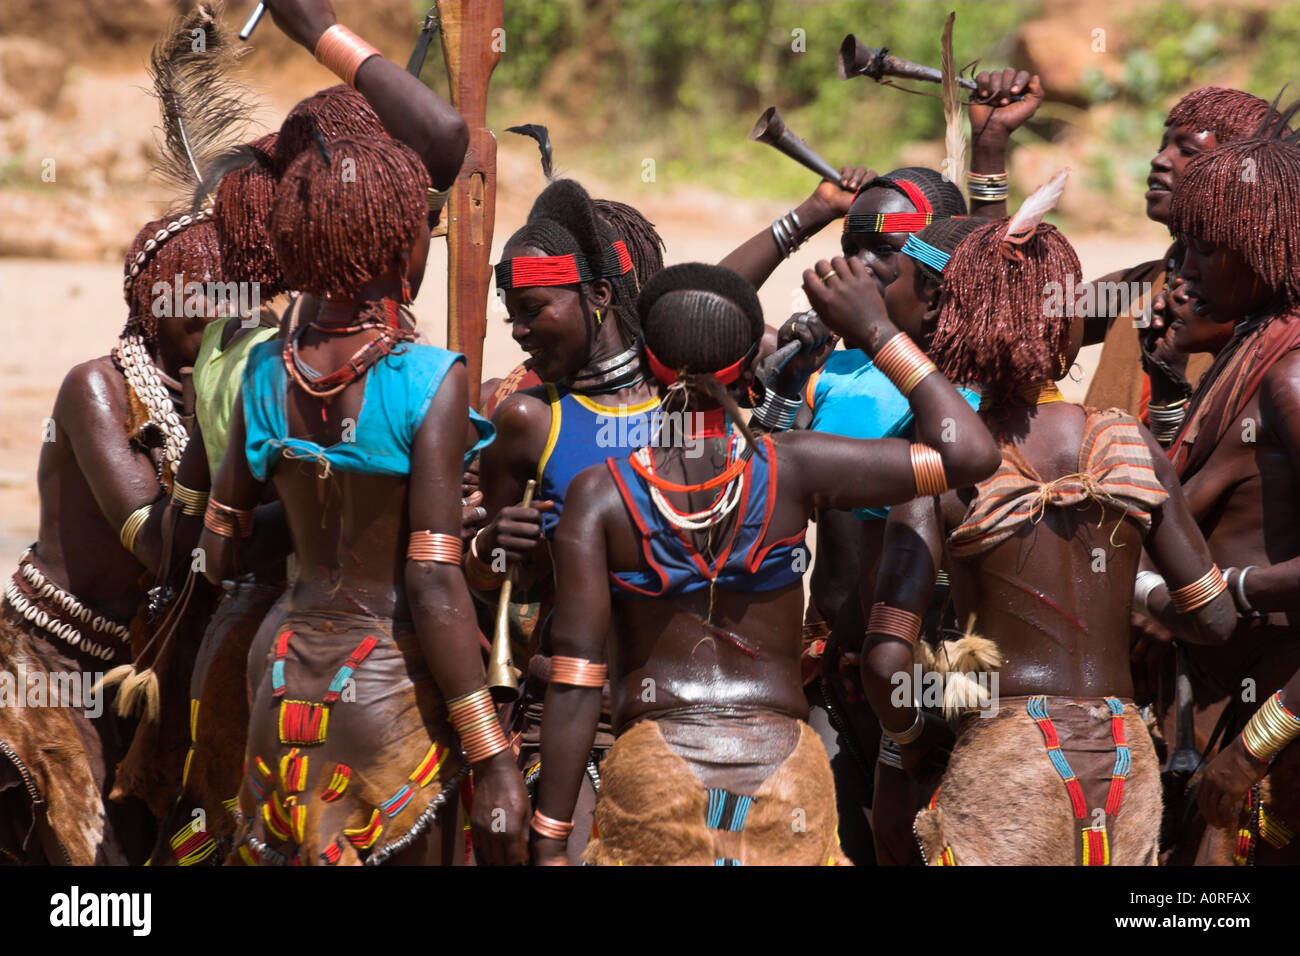 Les femmes chantent et dansent devant le taureau sautant Hamer sautant de la cérémonie d'initiation des taureaux Turmi vallée de l'Omo Ethiopie inférieure Banque D'Images